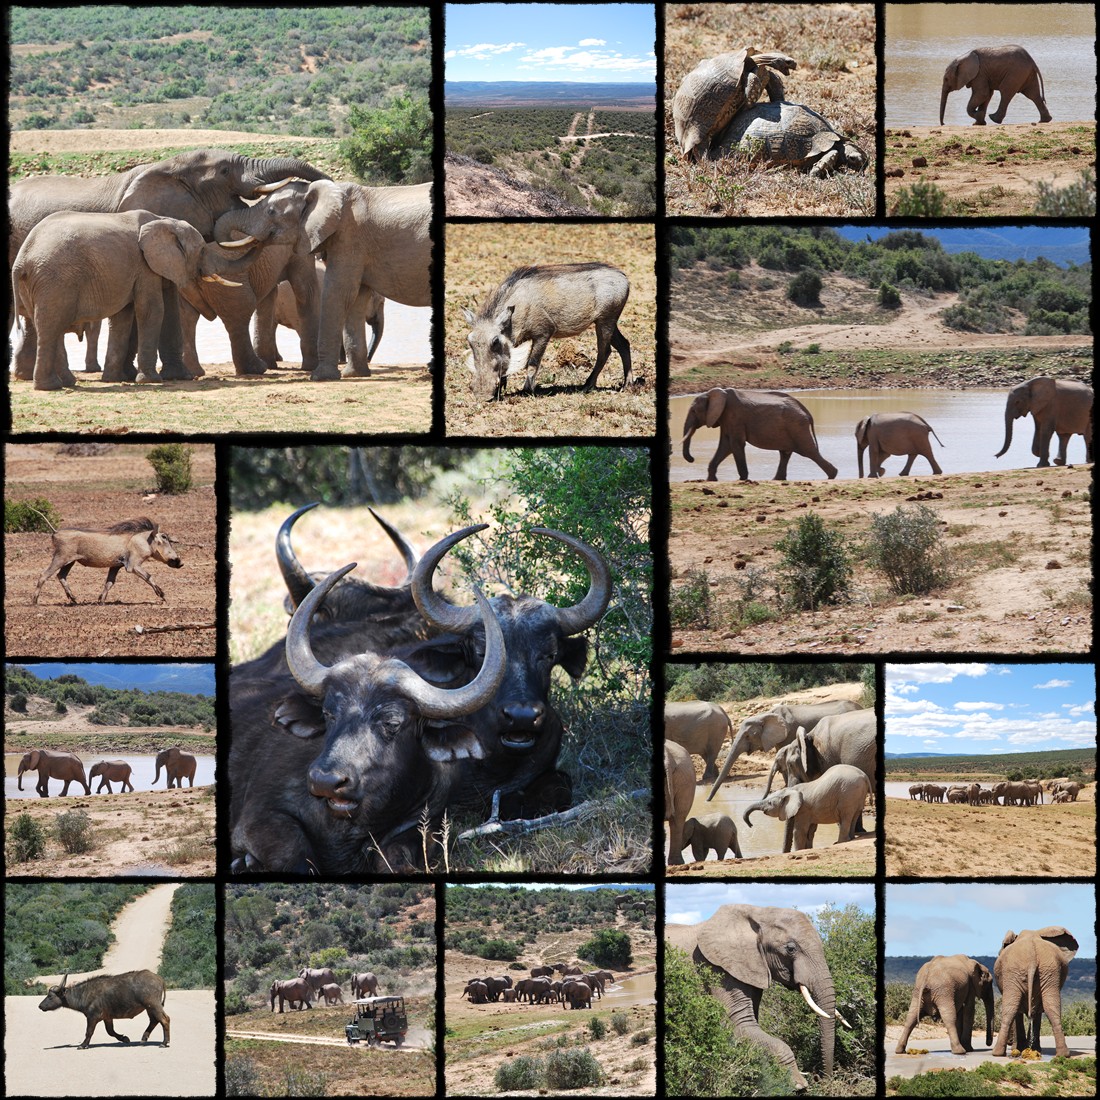 addo, addo national park, parco nazionale addo, elefanti, elefantino, elephants, little elephant, slonie, slon, sloniatko